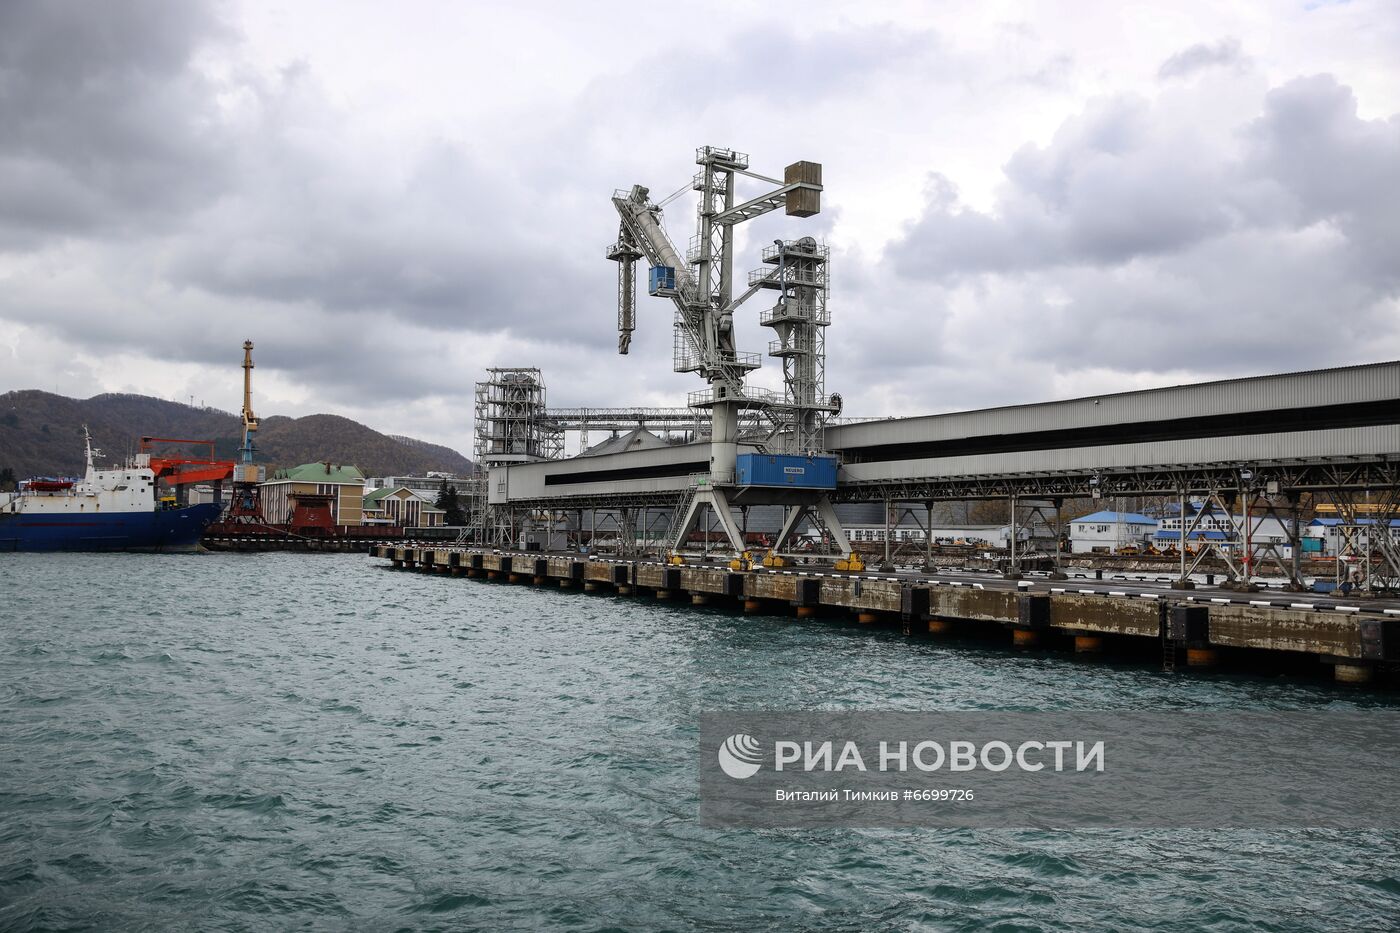 Открытие пункта пропуска через государственную границу РФ в морском порту Туапсе